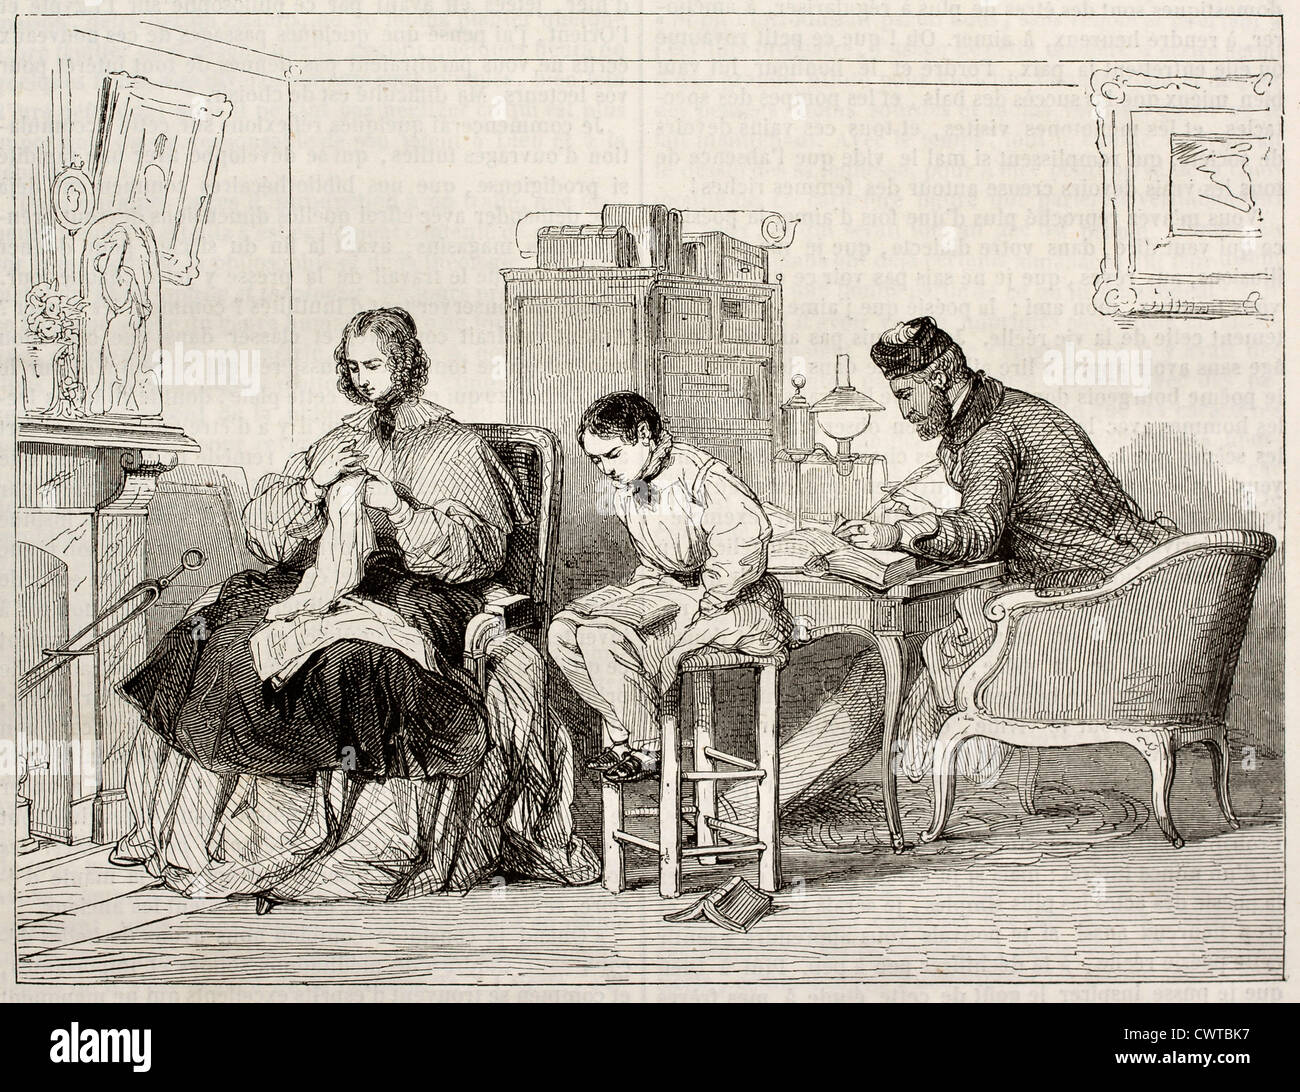 Ilustración antigua escena familiar. Por autor desconocido, publicado en el Magasin pintoresco, París, 1843 Foto de stock